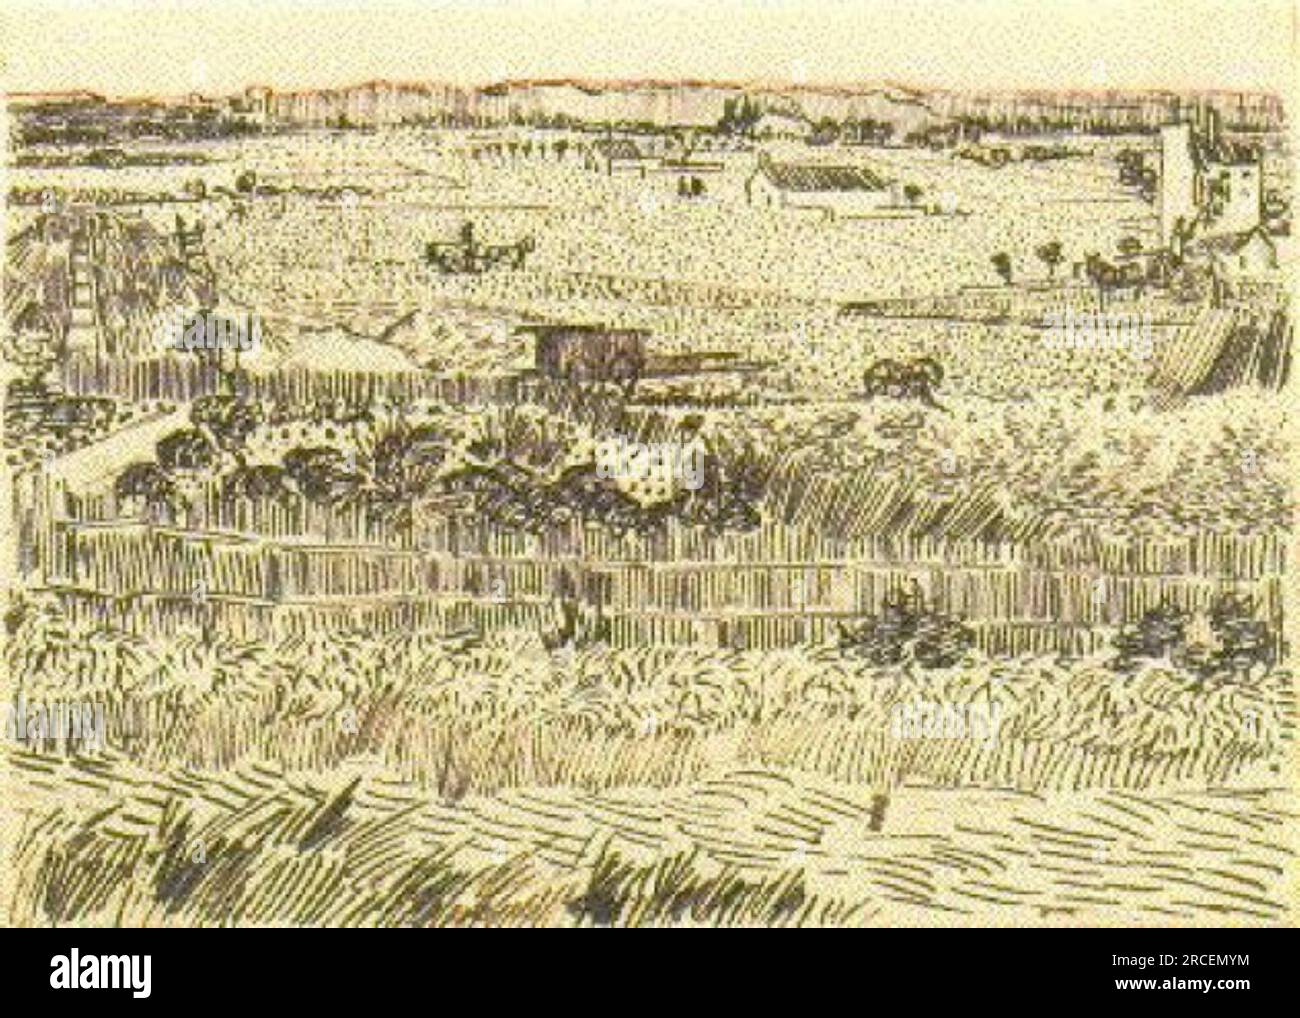 Harvest Landscape 1888; Arles, Bouches-du-Rhône, France by Vincent van Gogh Stock Photo